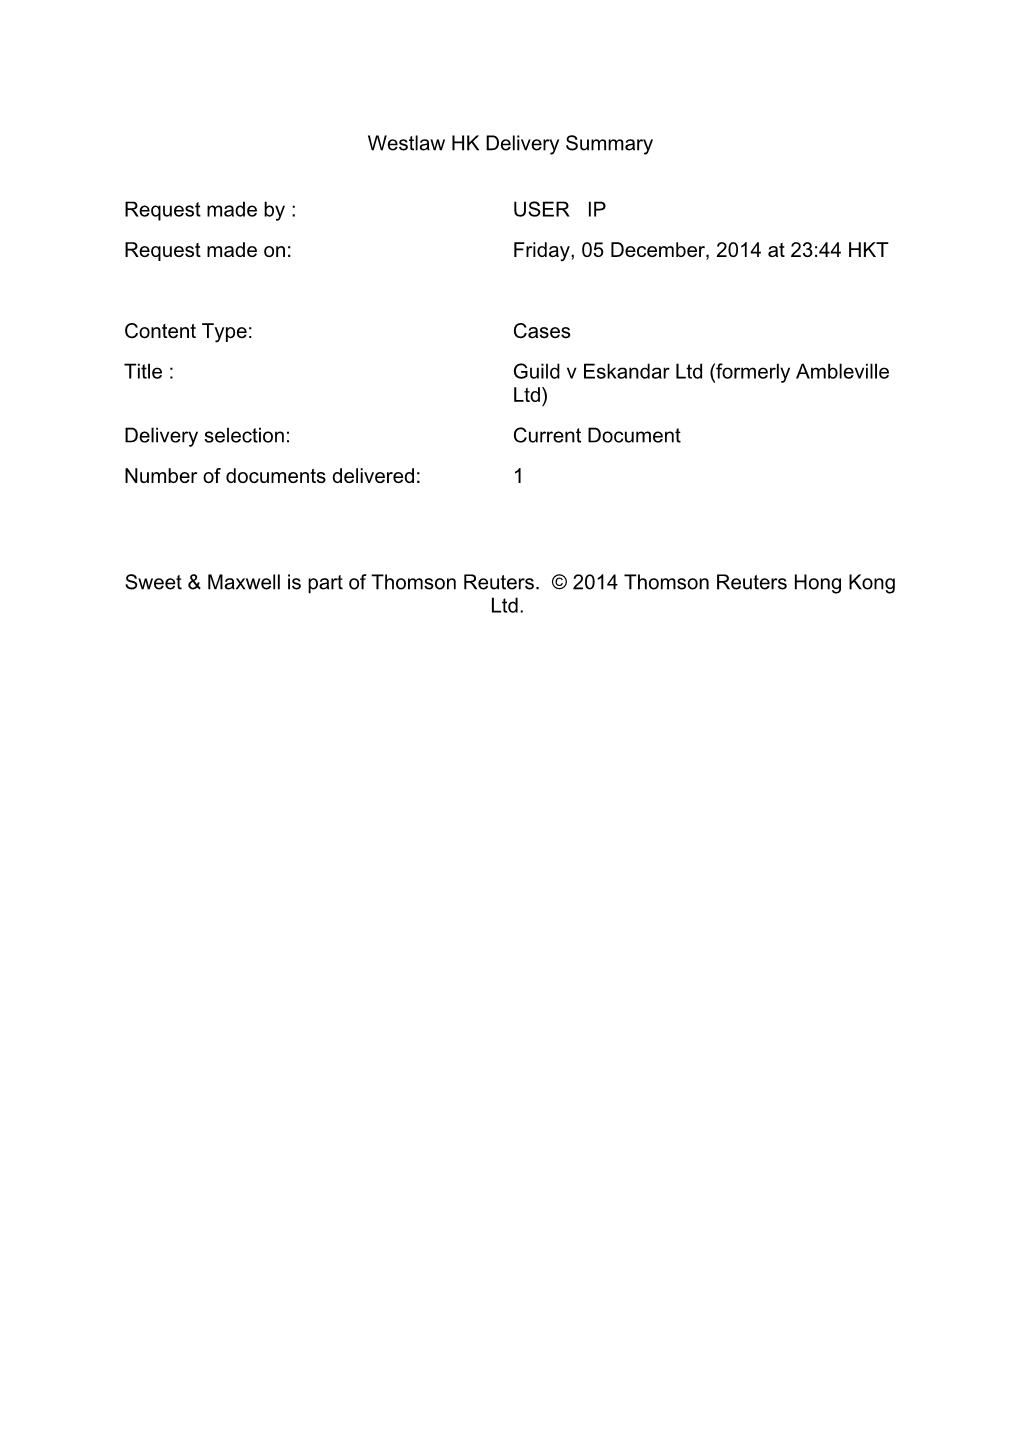 Guild V Eskandar Ltd (Formerly Ambleville Ltd) Delivery Selection: Current Document Number of Documents Delivered: 1